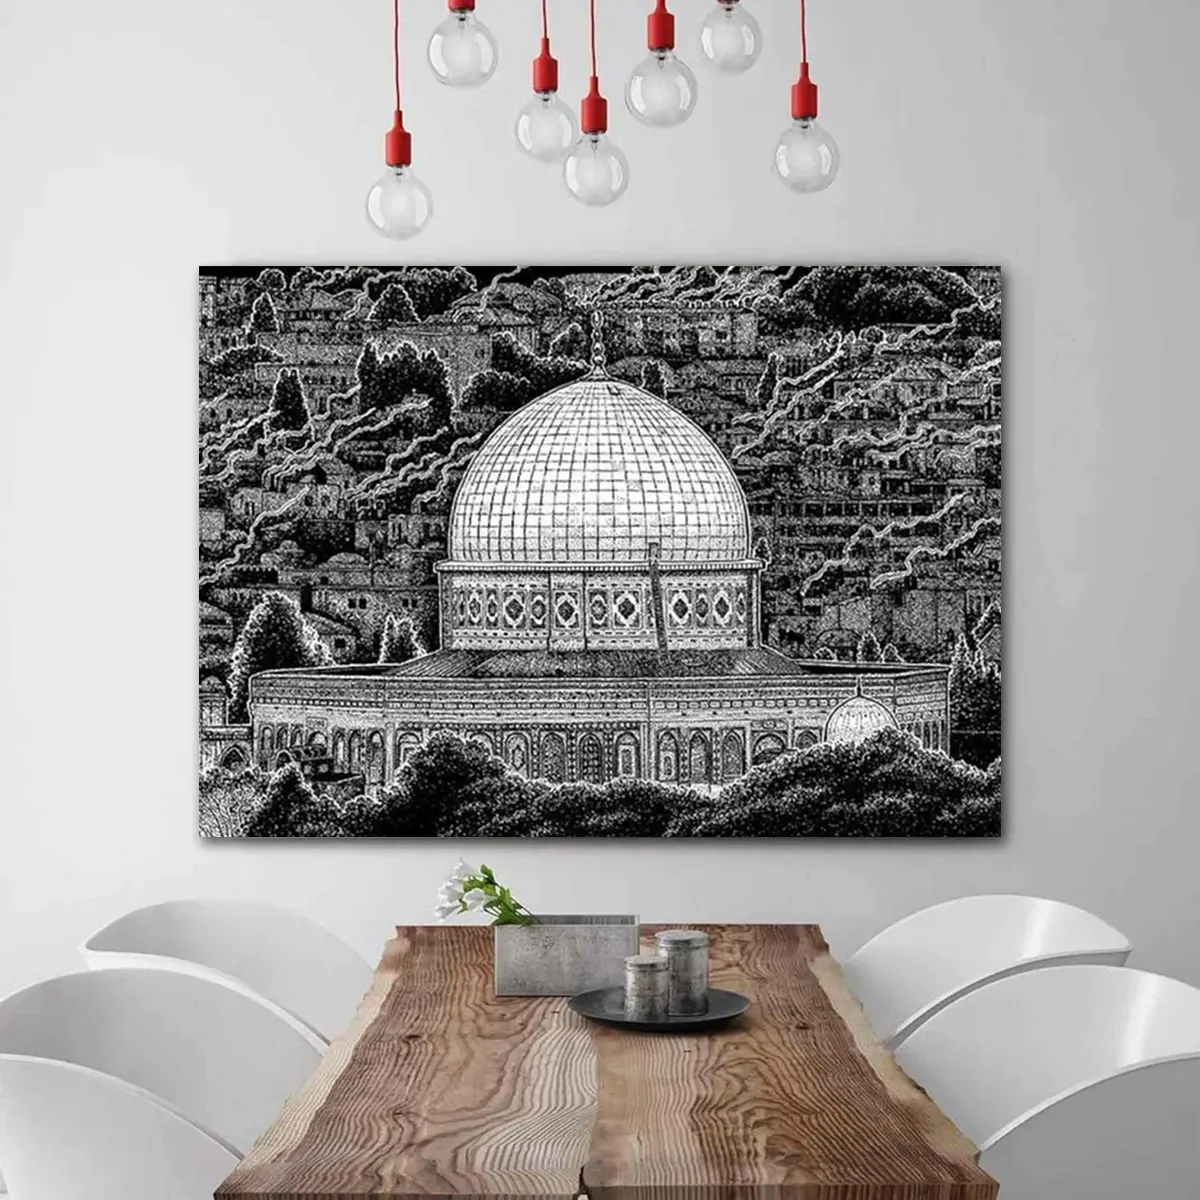 لوحات للصلاة على حائط المسجد والآذان بتصميم الزجاج العصري الإسلامي والكريستال والبورسلين ديكور إسلامي بخط جميل